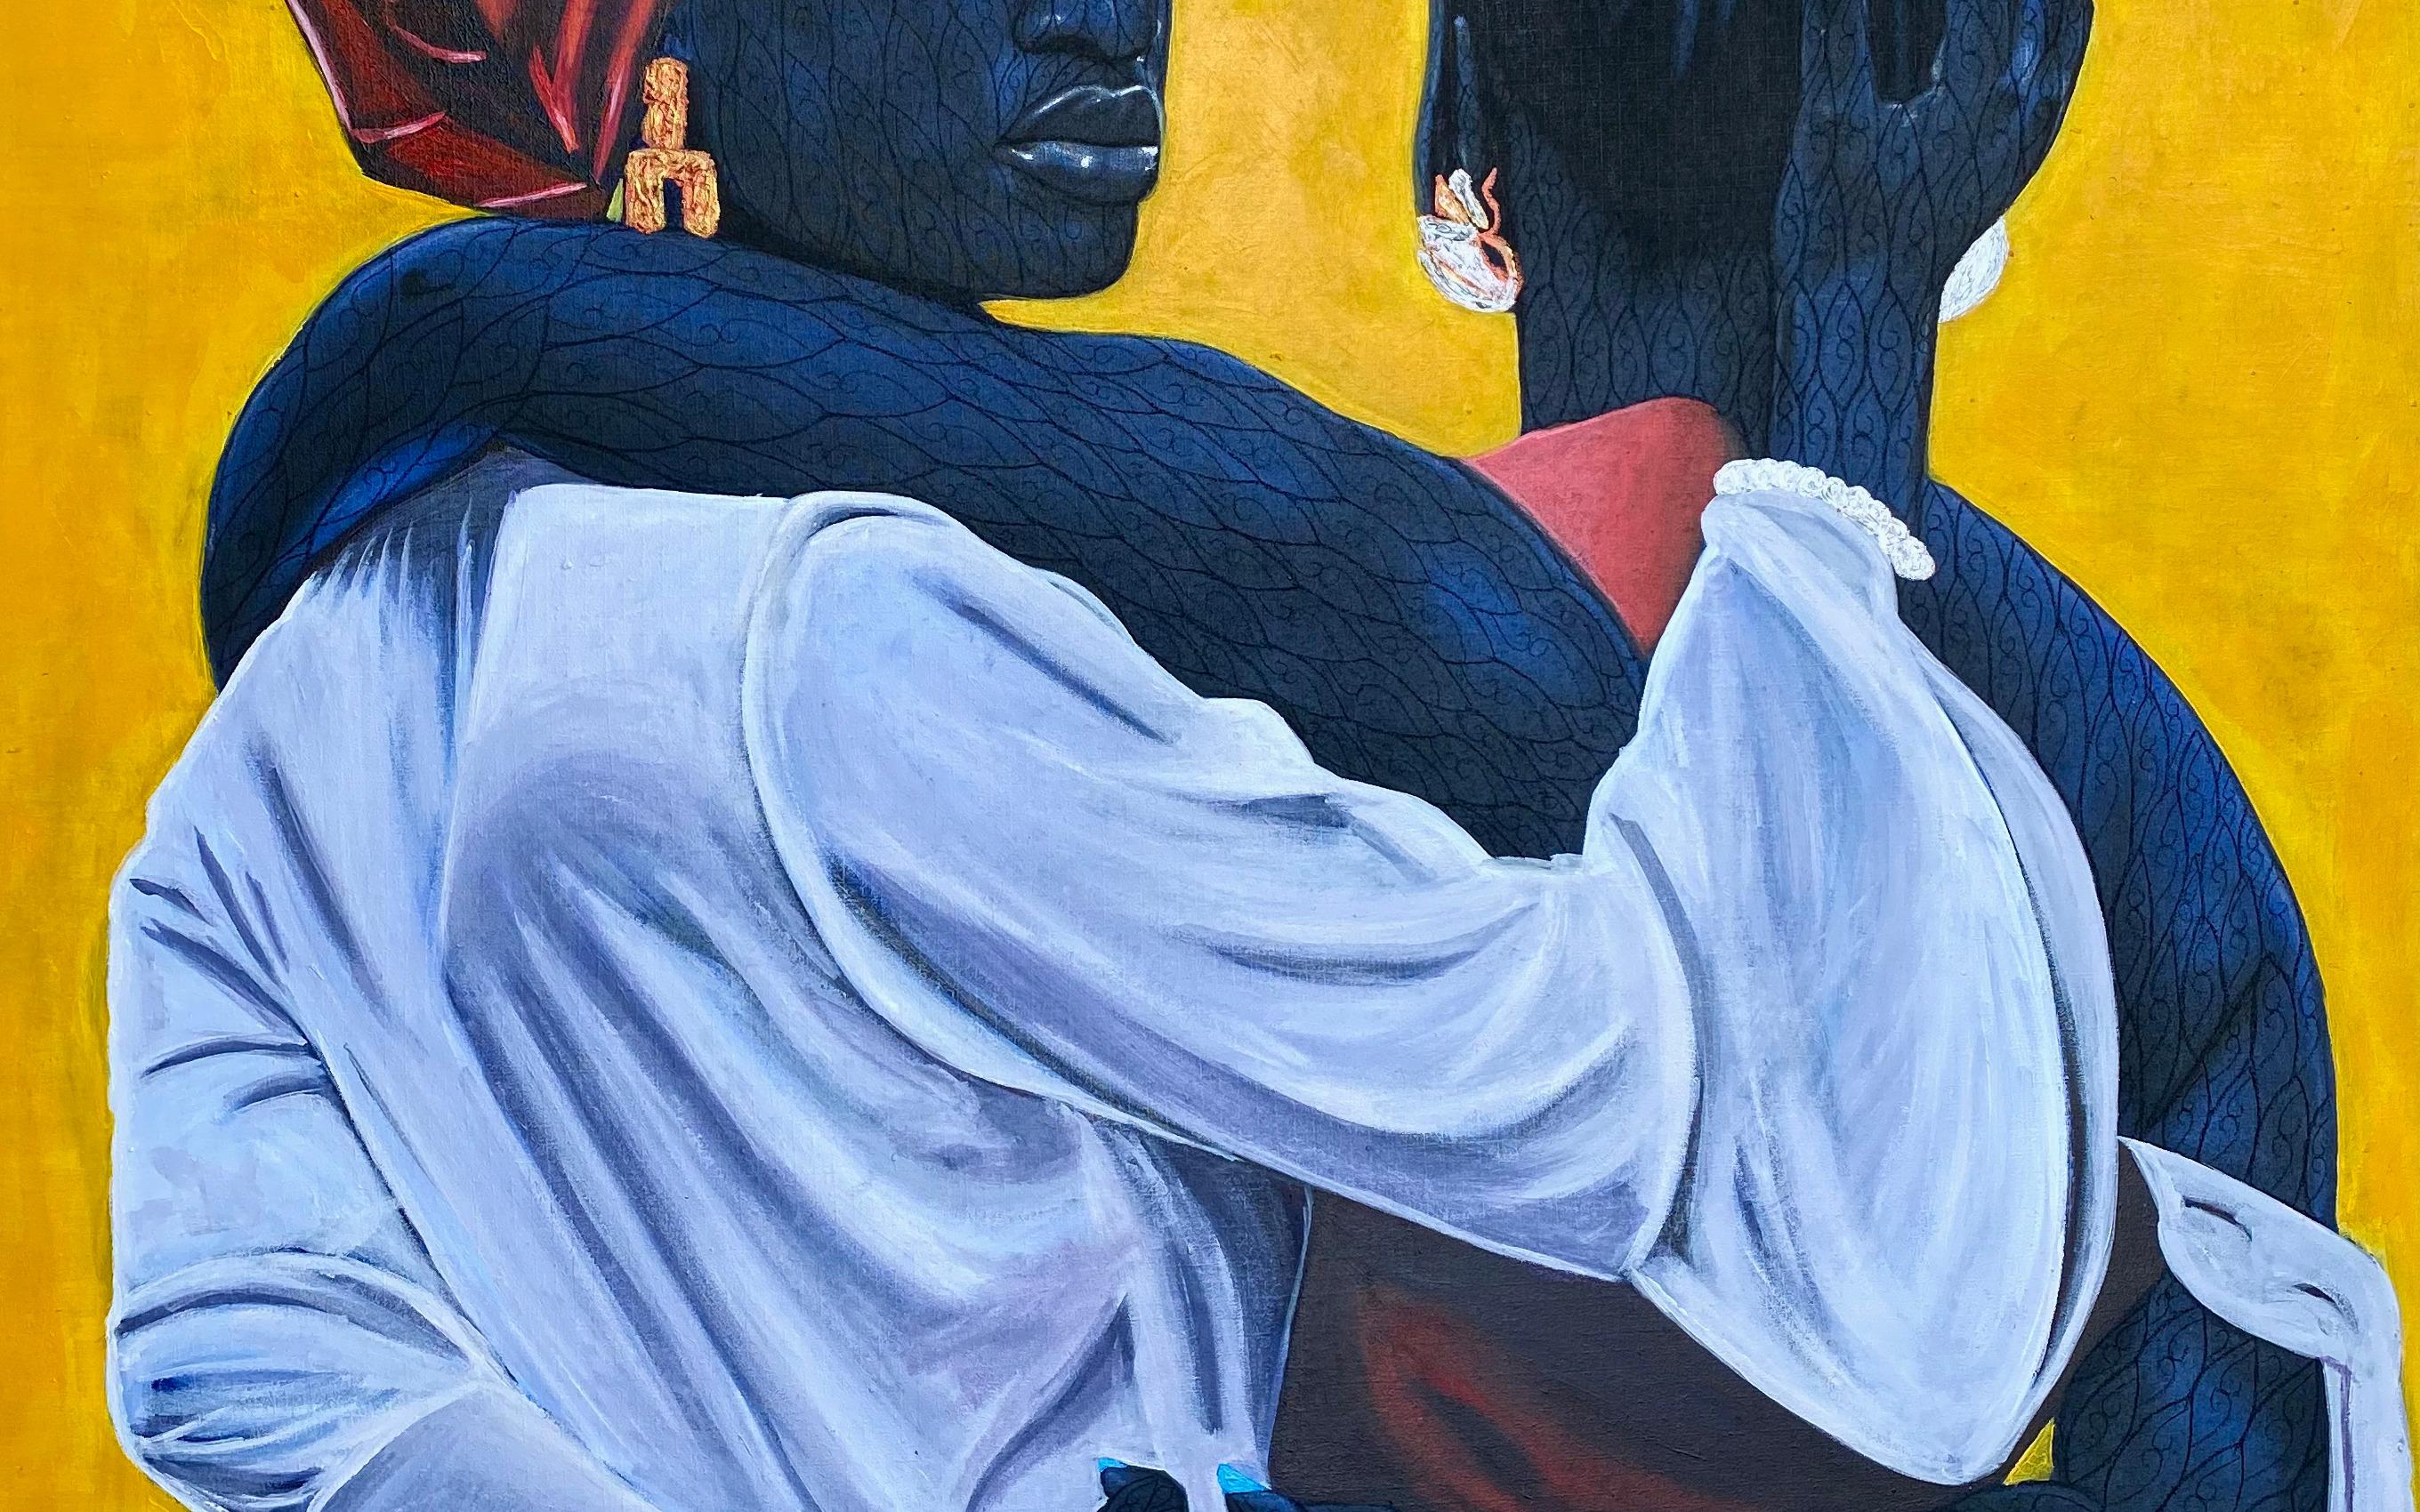 Sisterhood (The Love We Share) - Contemporary Painting by Taiwo Odejinmi